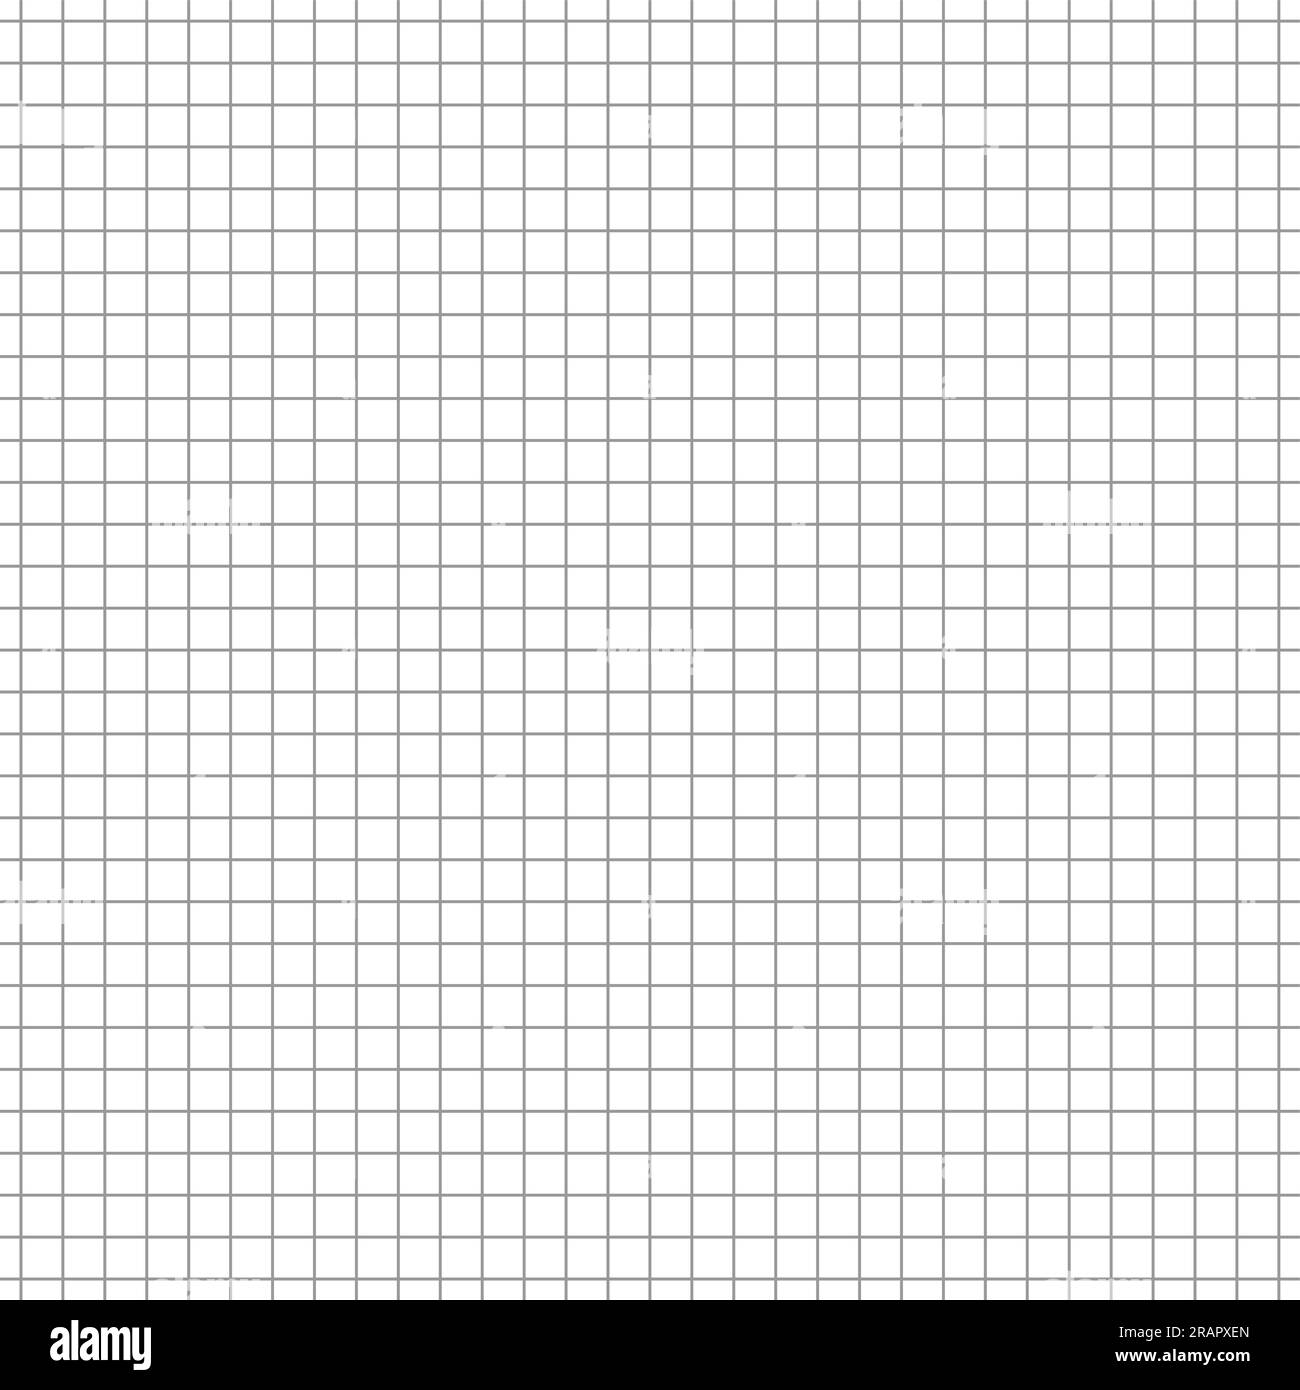 Vector Grid Seamless Pattern, fond de graphique carré répétitif décoratif pour le papier d'emballage, motif de papier de grille grise sur fond blanc pour le bureau Illustration de Vecteur